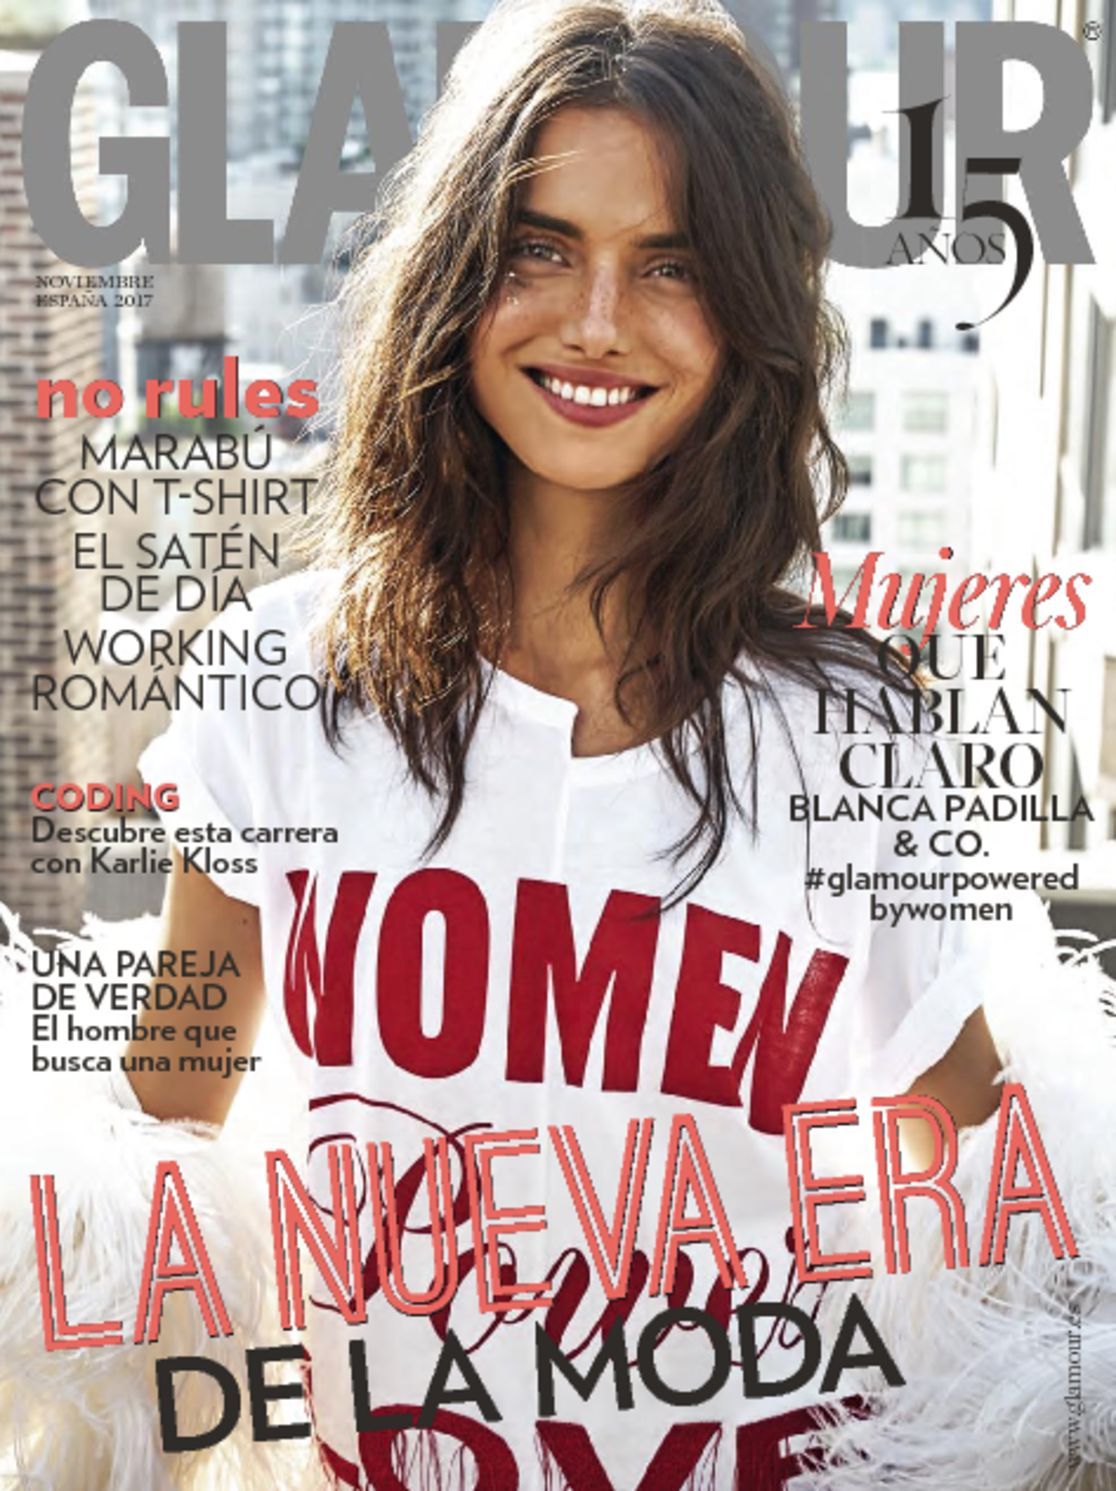 Glamour España Magazine (Digital) - DiscountMags.com